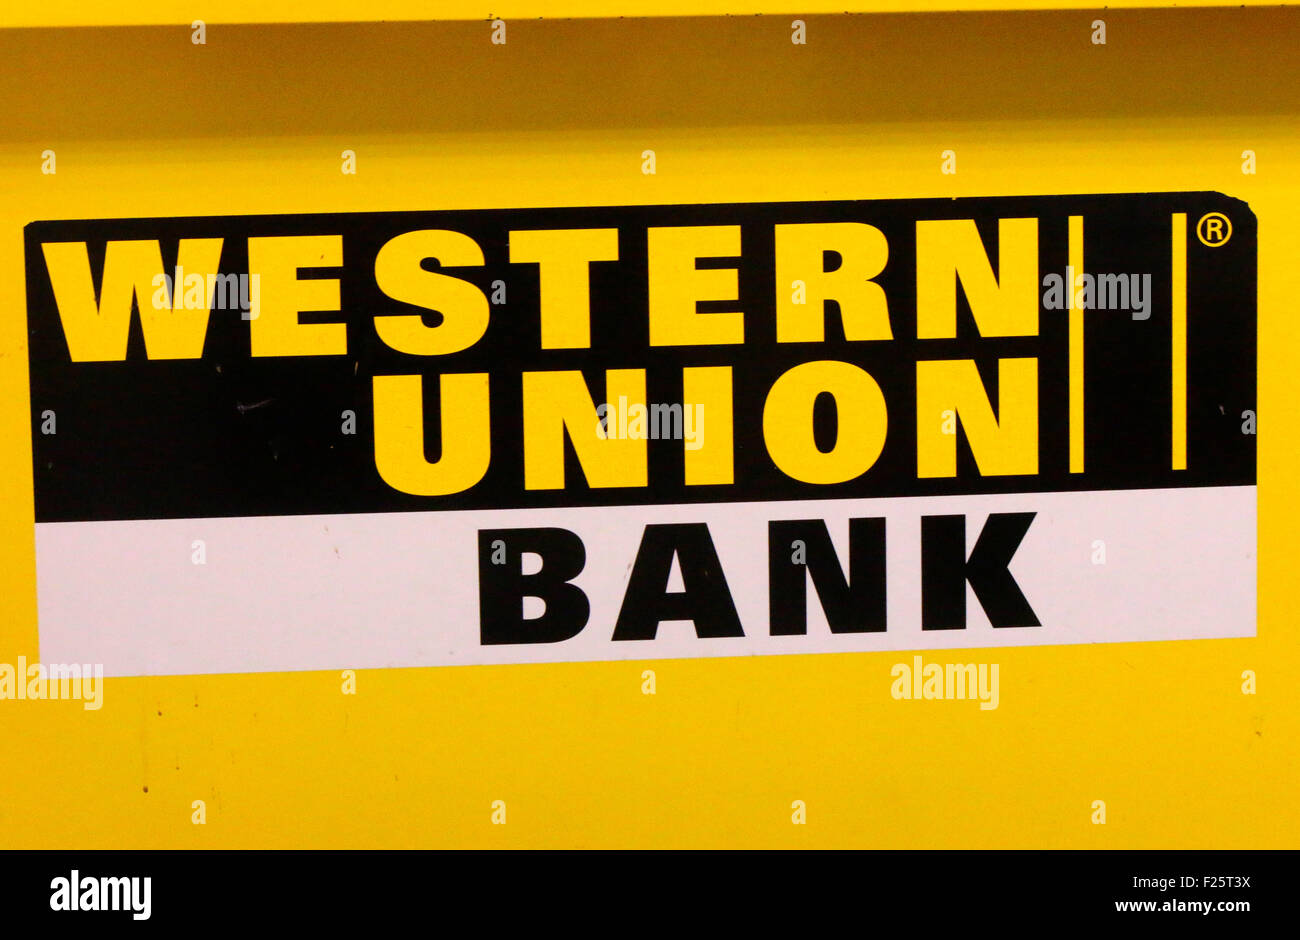 Western union immagini e fotografie stock ad alta risoluzione - Alamy